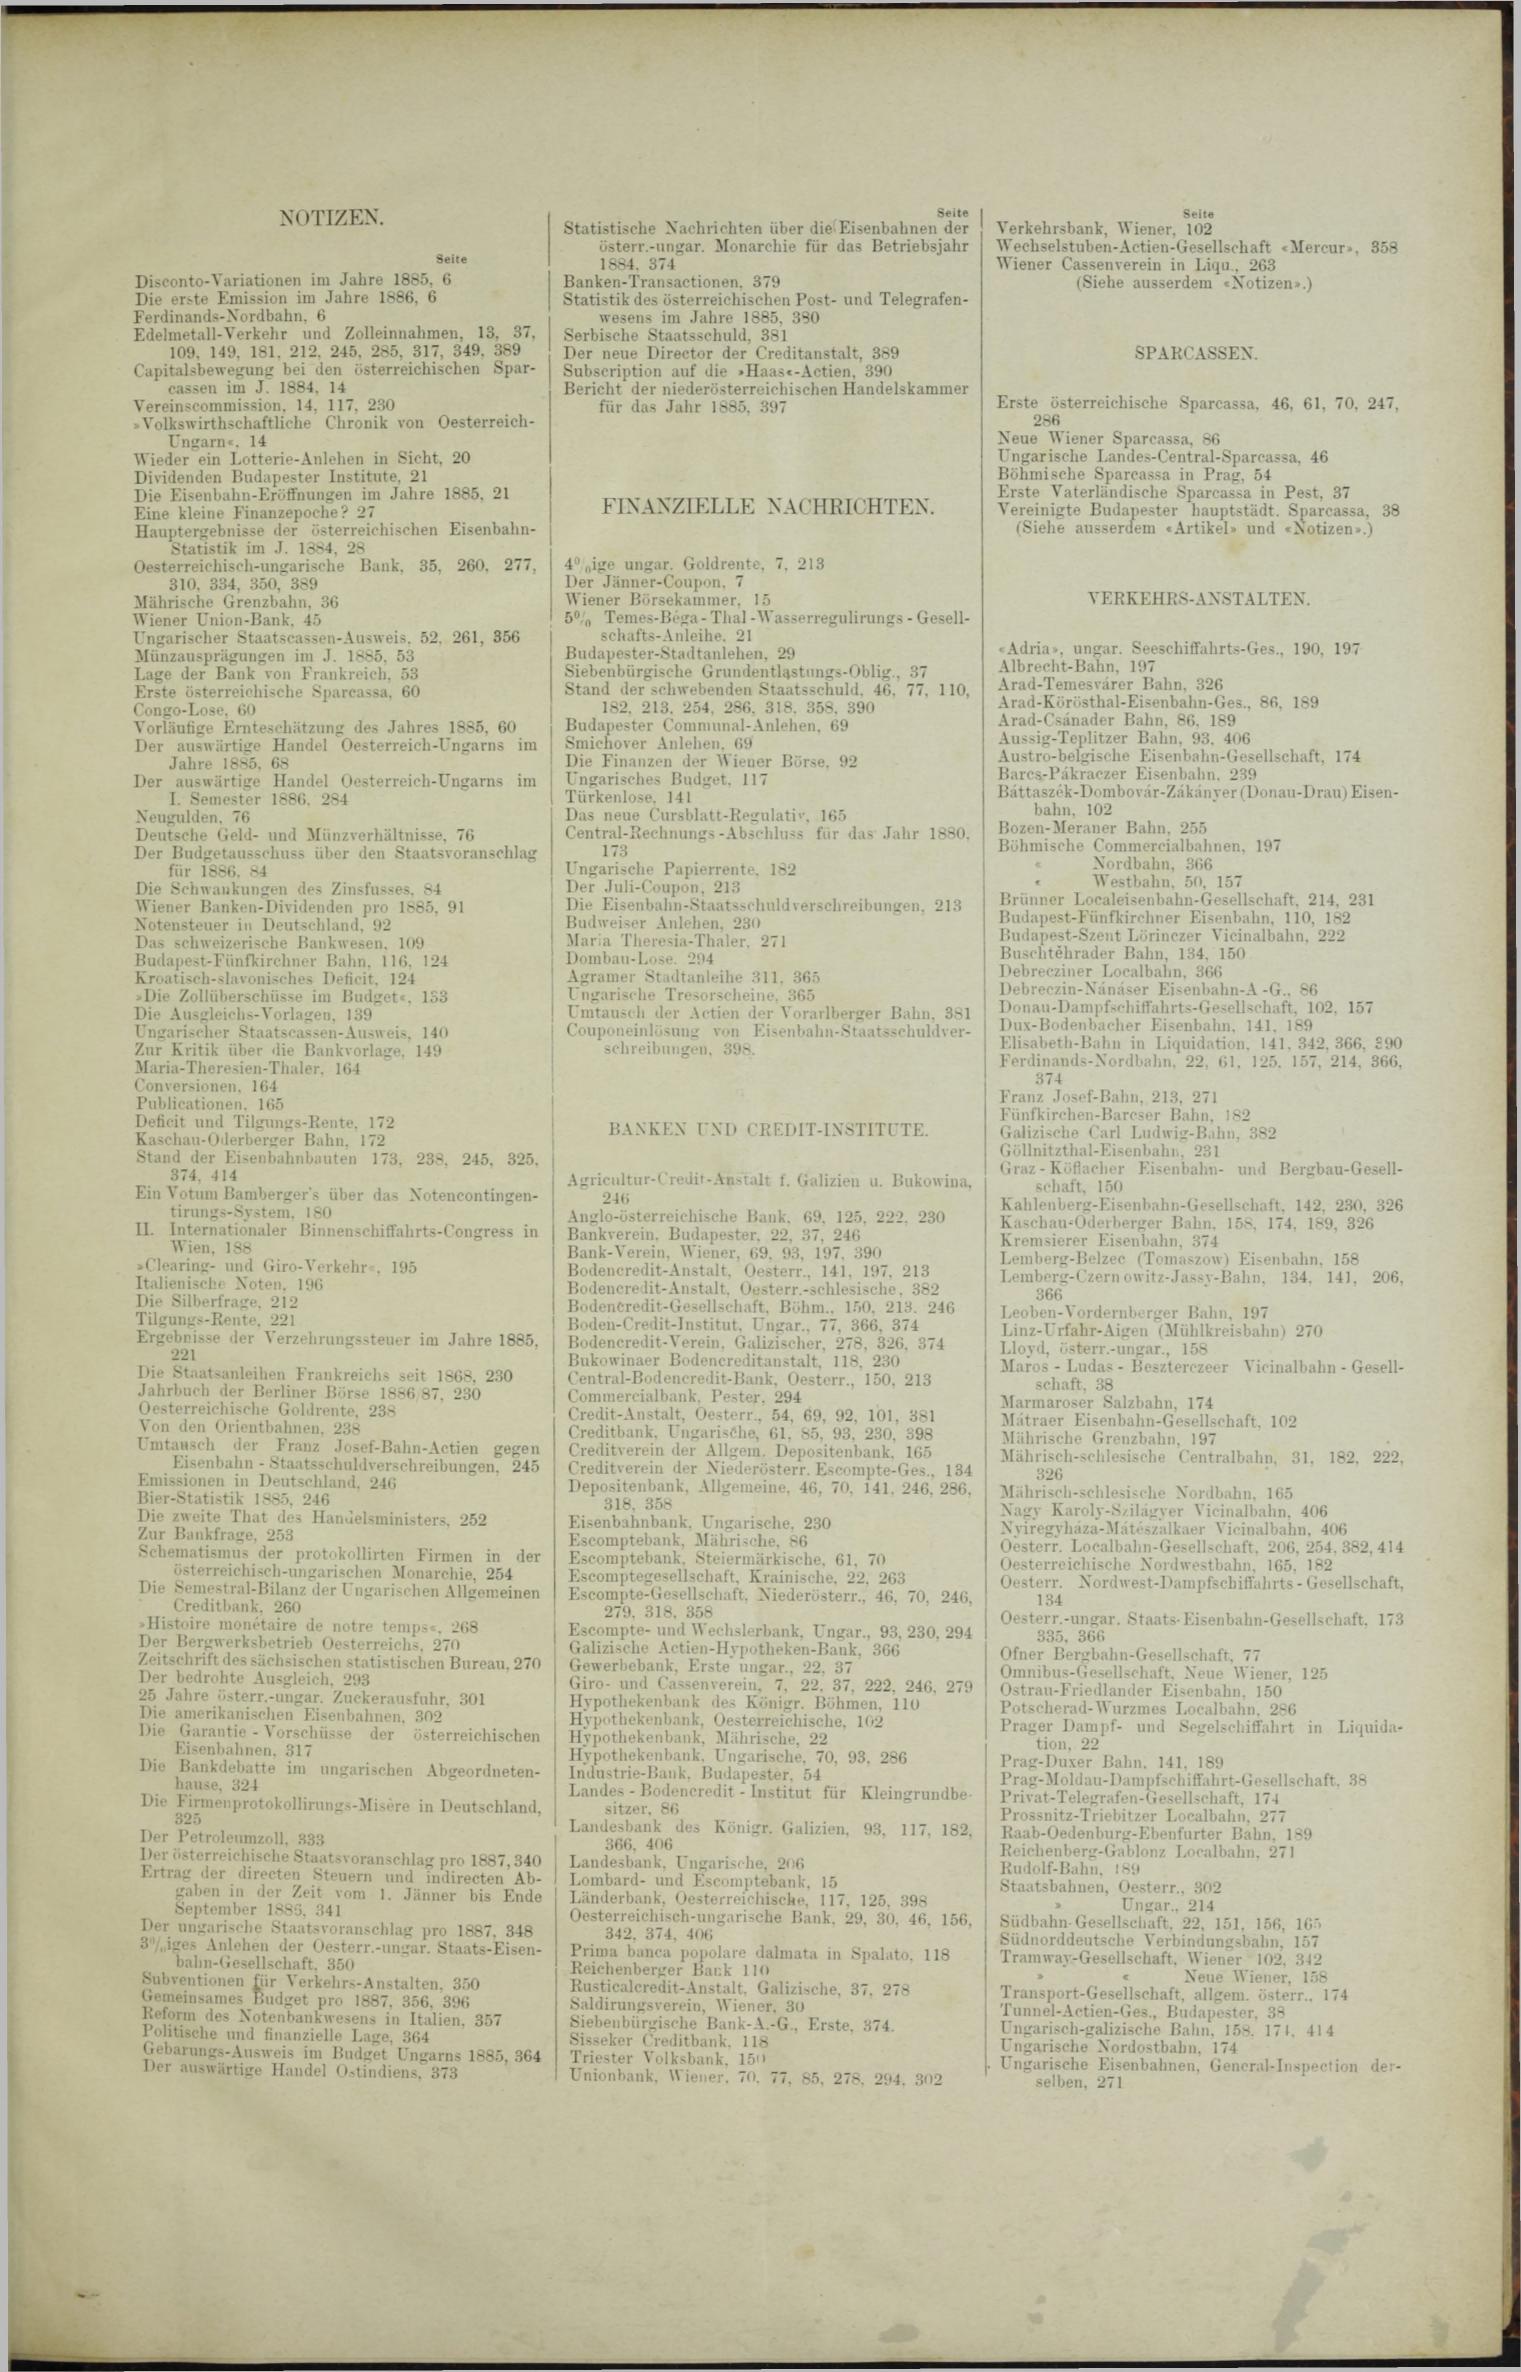 Der Tresor 18.11.1886 - Seite 11